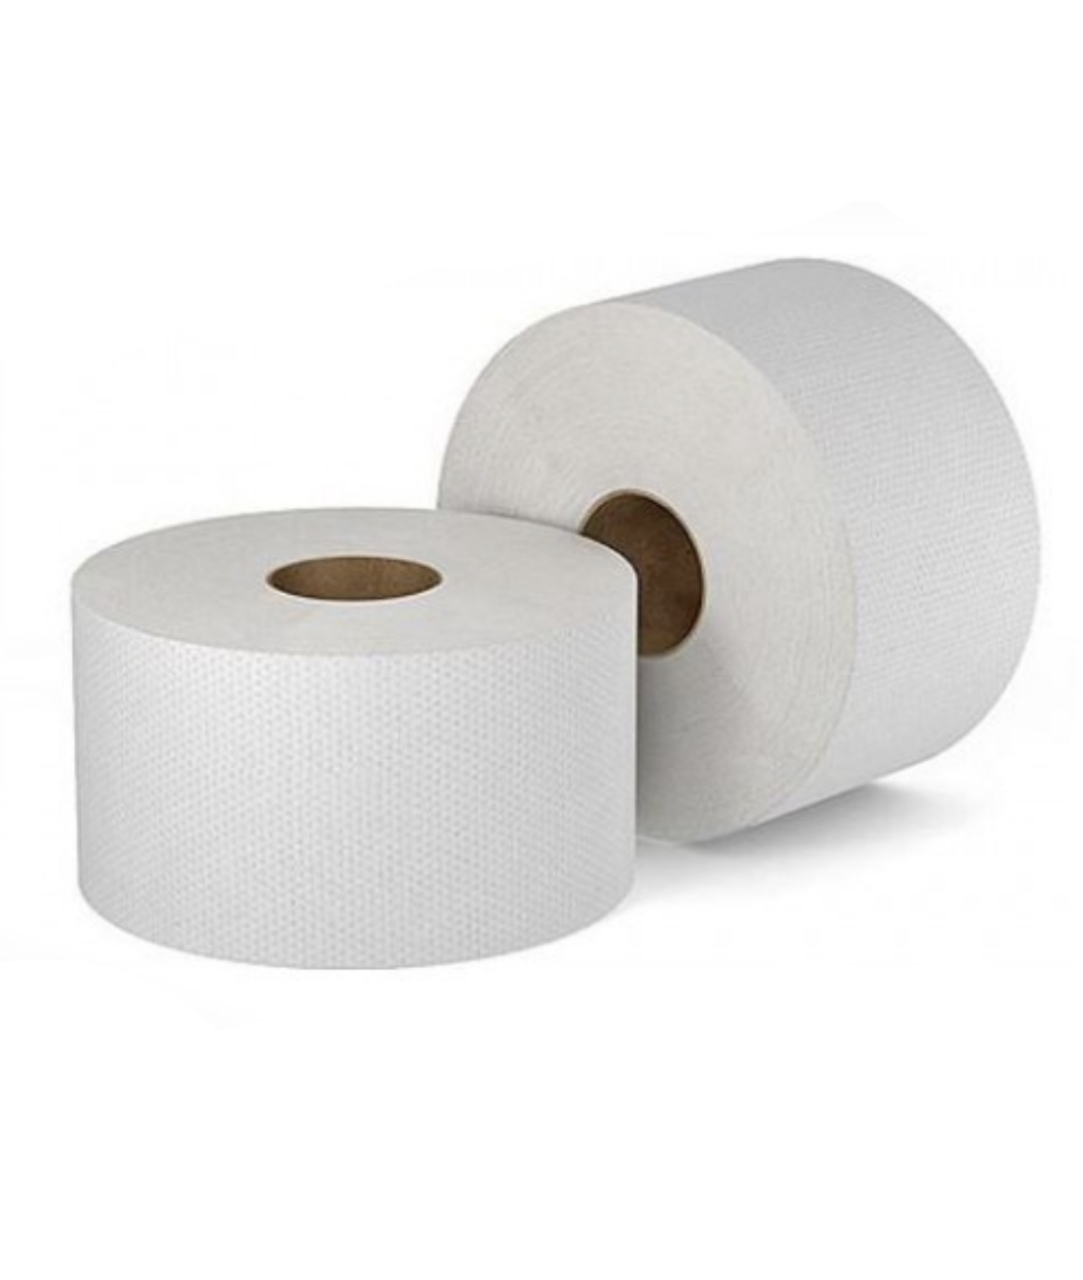 Туалетная бумага Профгигиена Comfort, двухслойная белая .арт. 204 бумага туалетная 2 слойная officeclean белая 30м 4 рул уп 12 уп